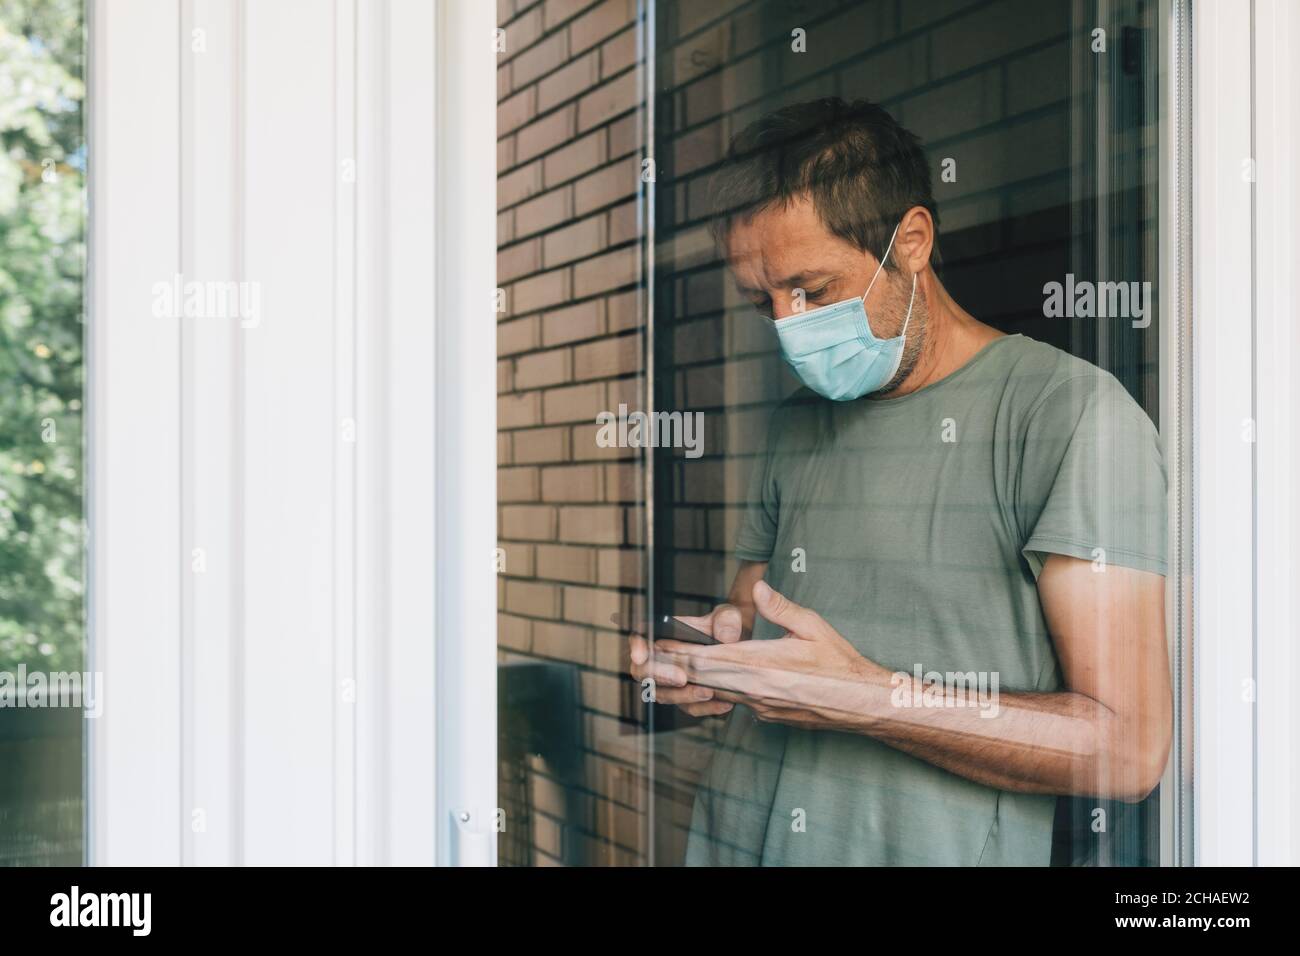 Mann, der während des Coronavirus-Ausbruchs in Selbstisolation auf dem Mobiltelefon SMS schreibt, Porträt eines erwachsenen Mannes hinter dem Fenster Stockfoto